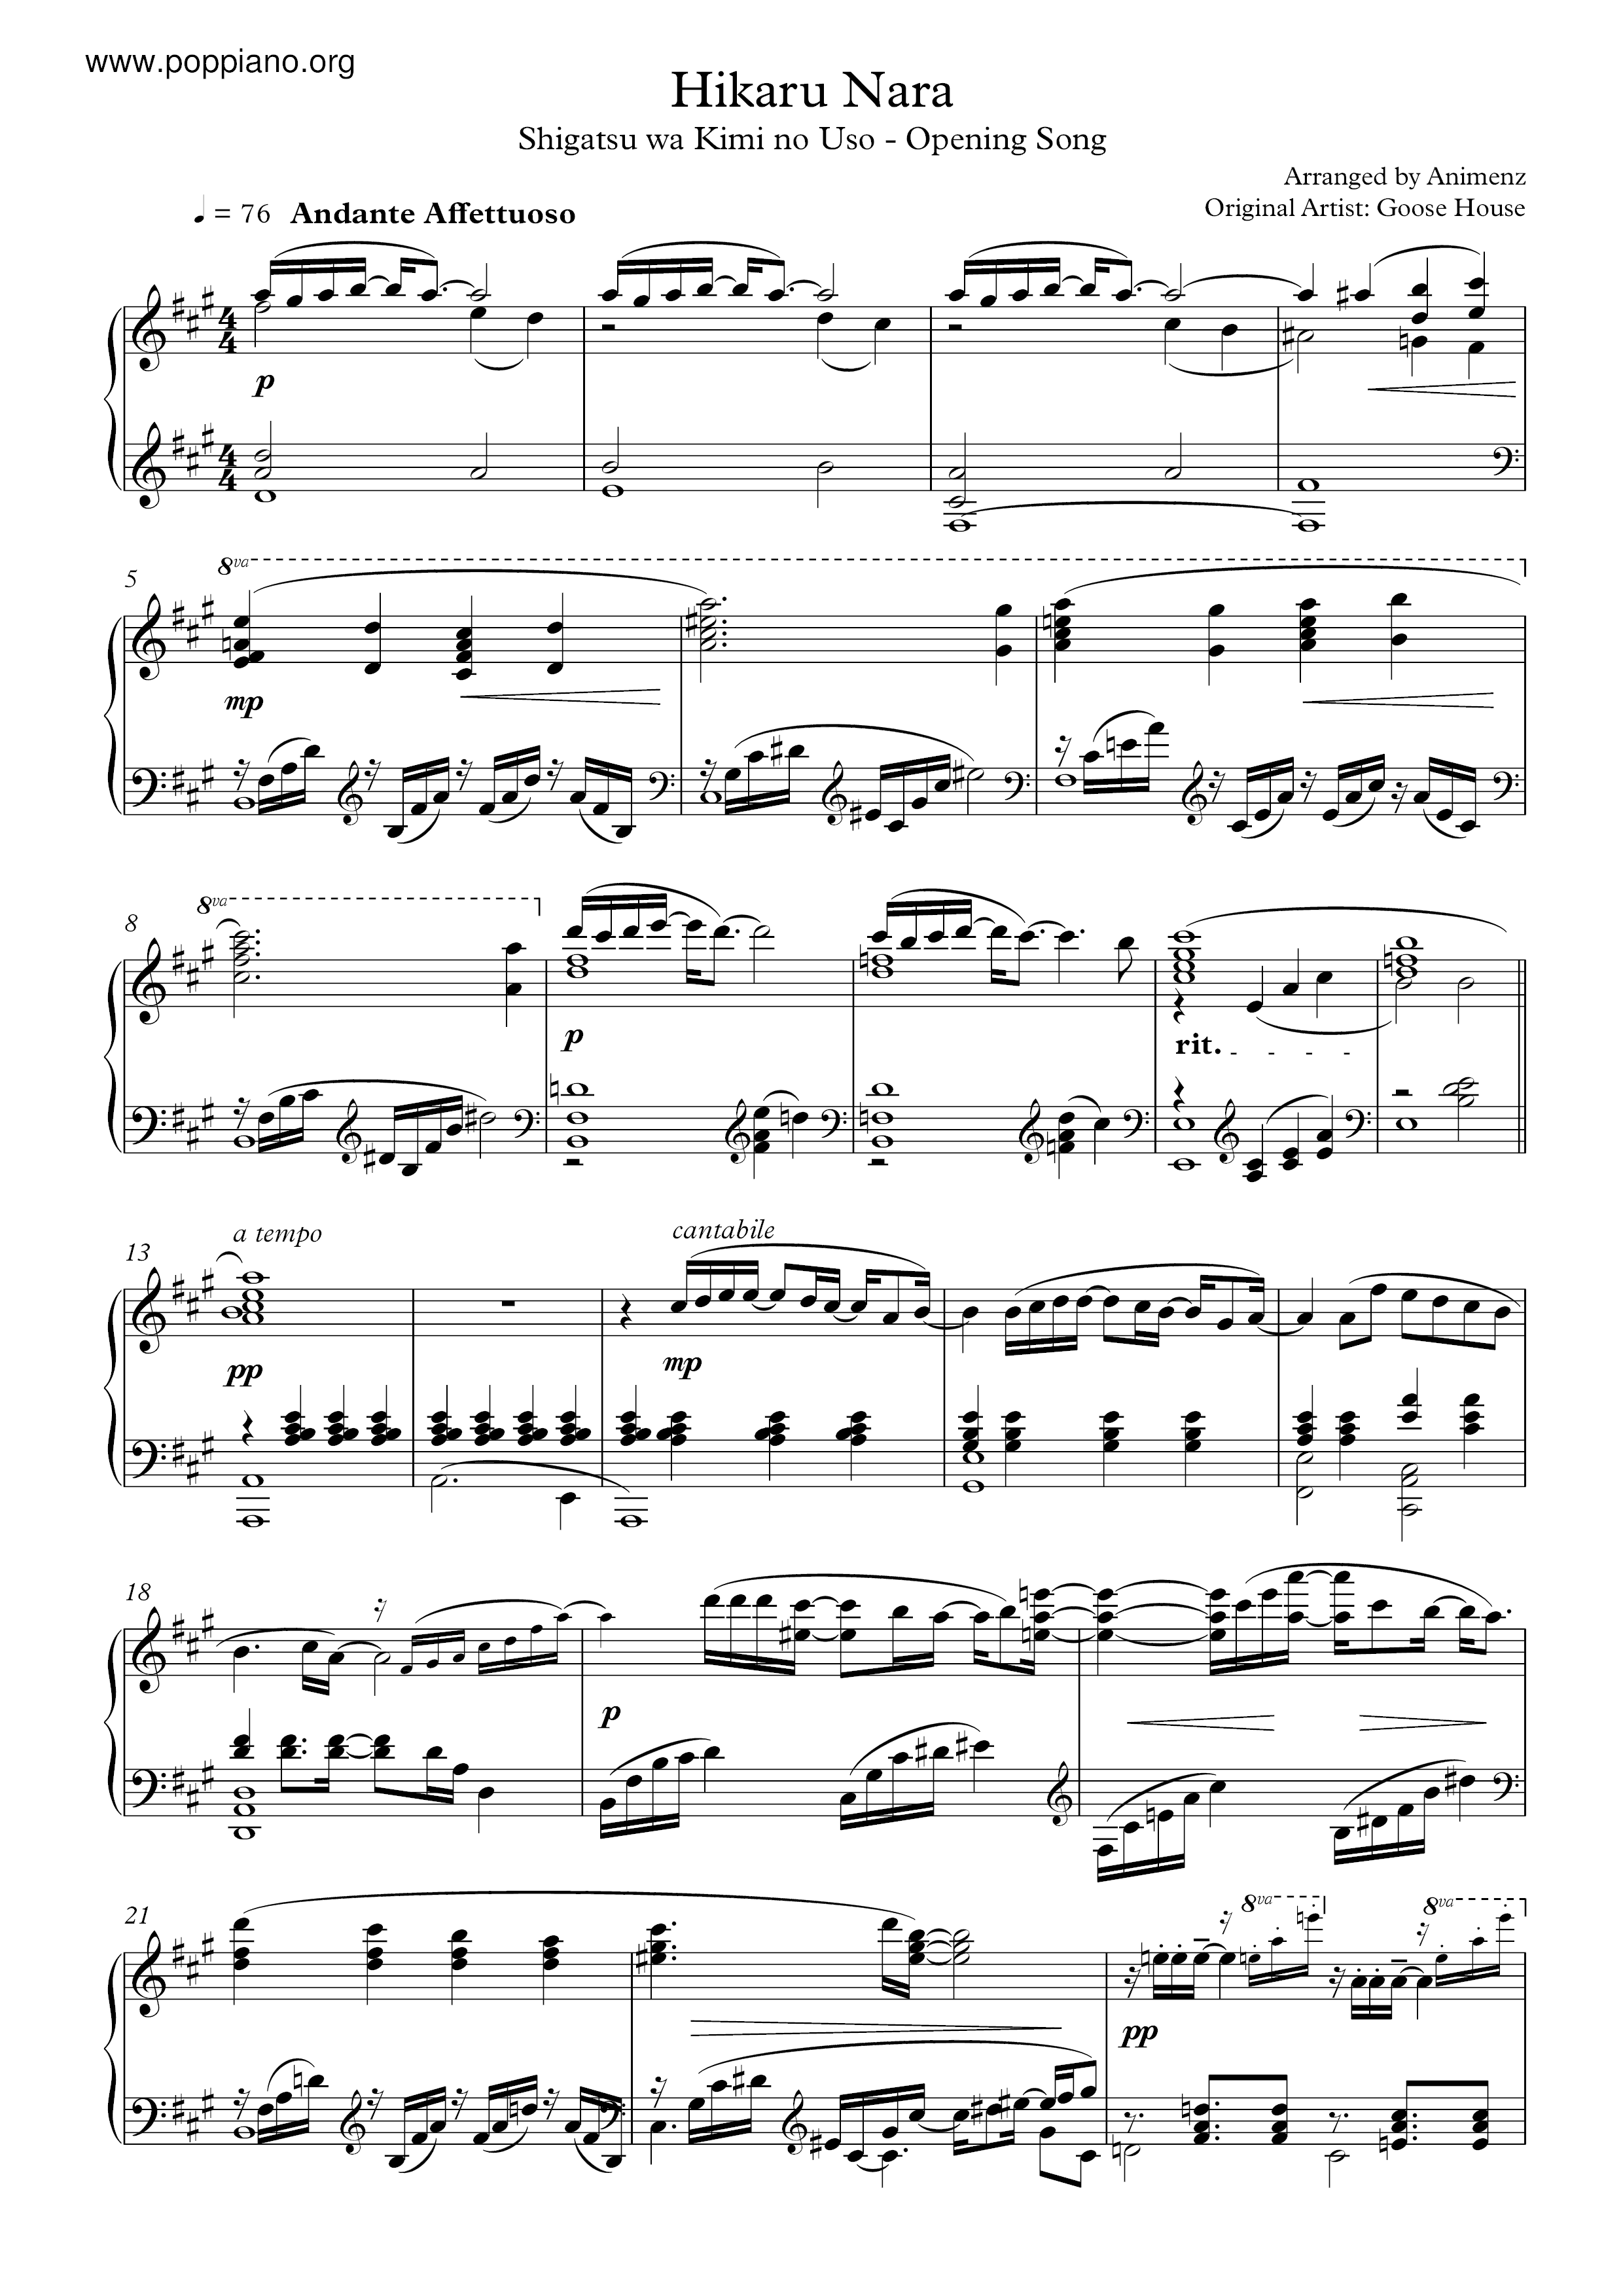 Shigatsu Wa Kimi No Uso - Hikaru Nara Score